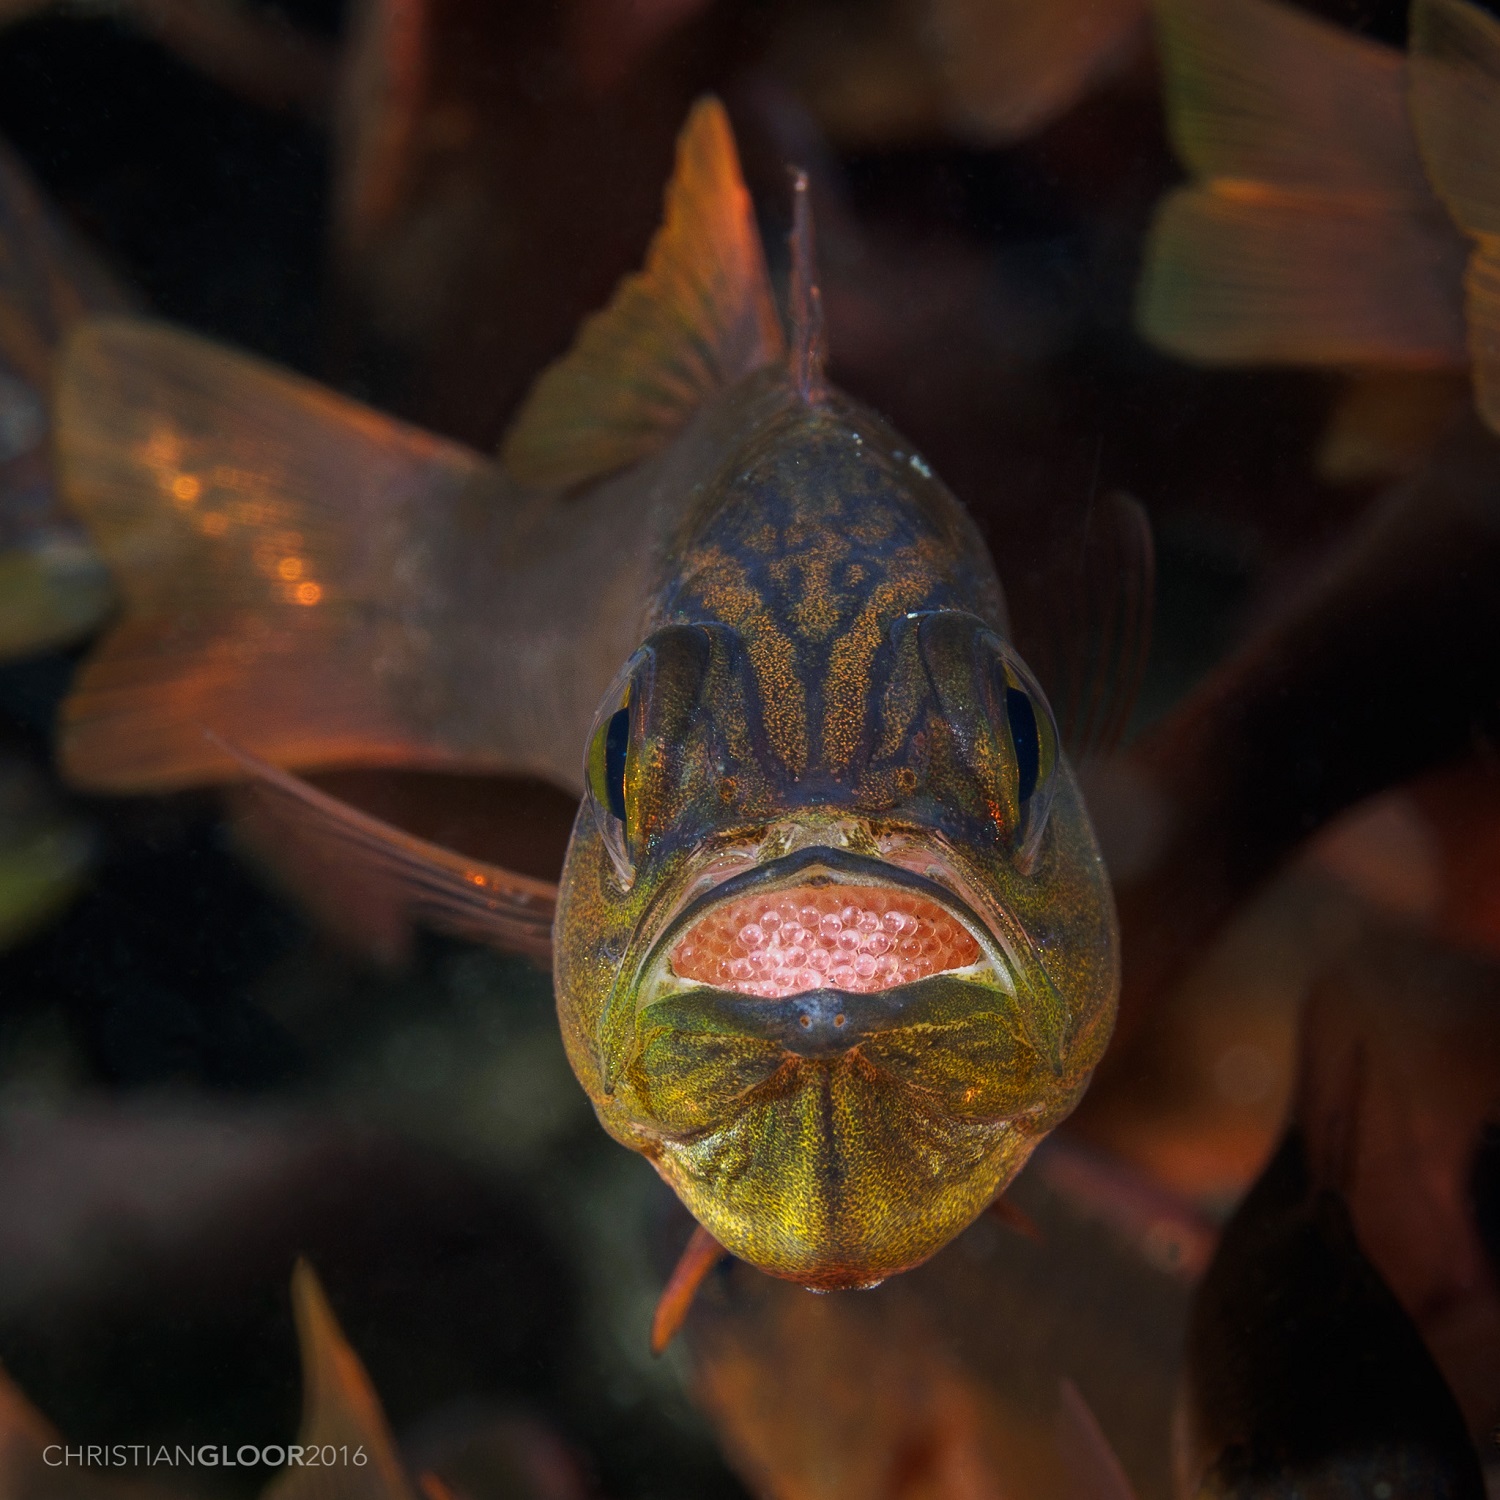 Insolite : ces poissons mâles couvent des œufs dans leur bouche